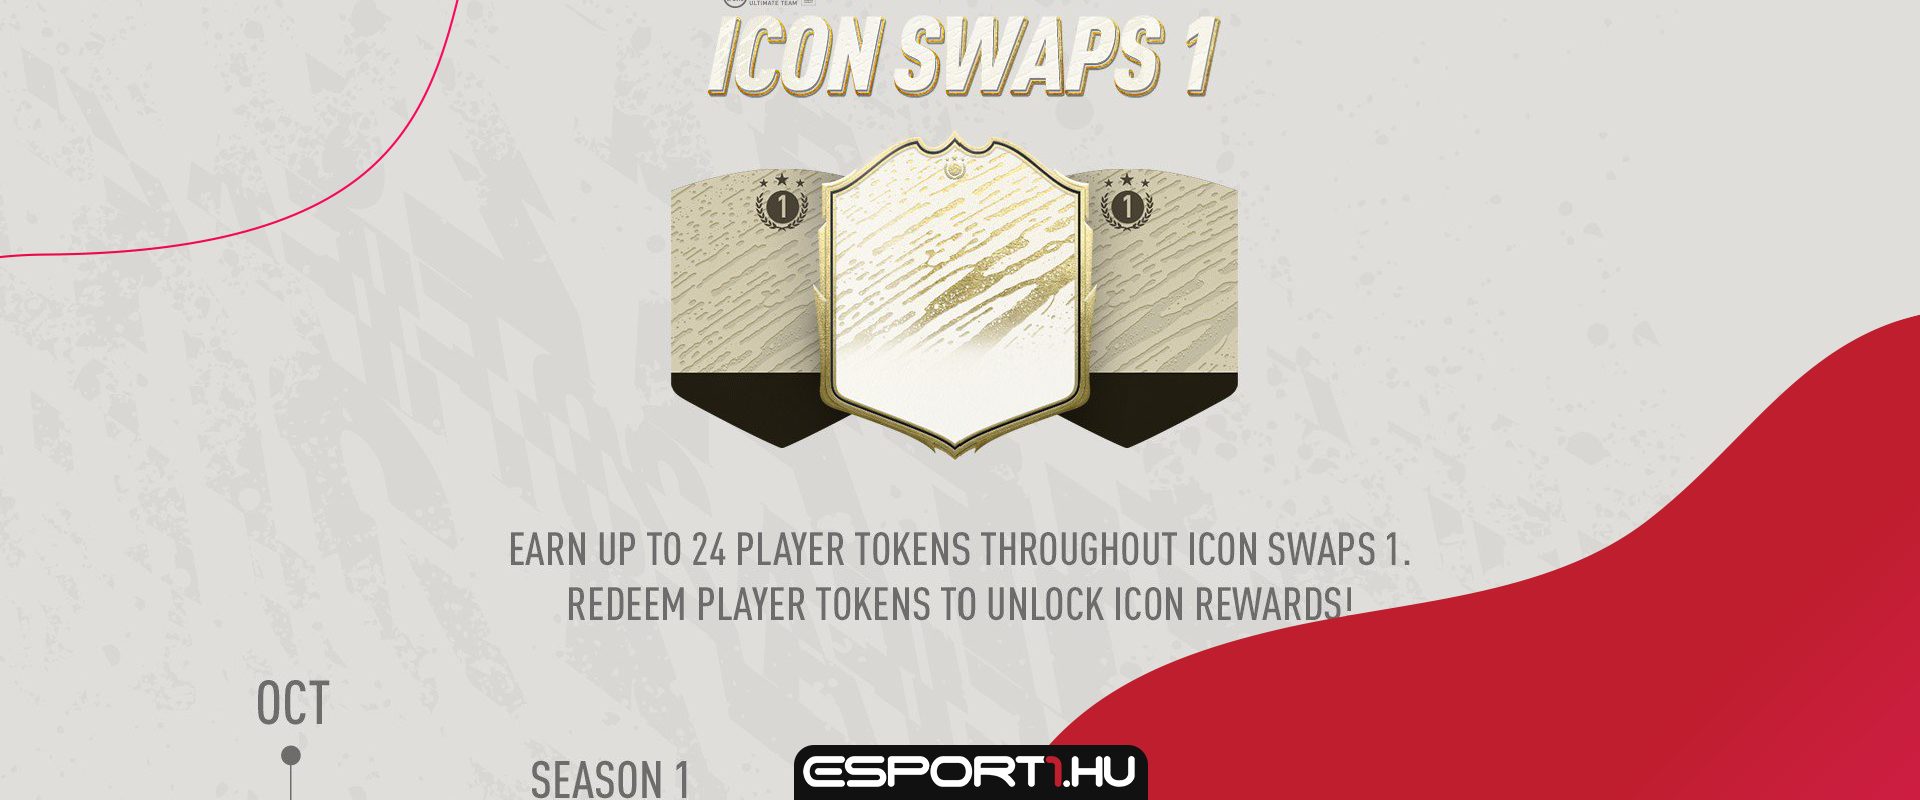 Kiderült mennyi tokenért szerezhetjük be az Icon Swap 1 kártyáit!